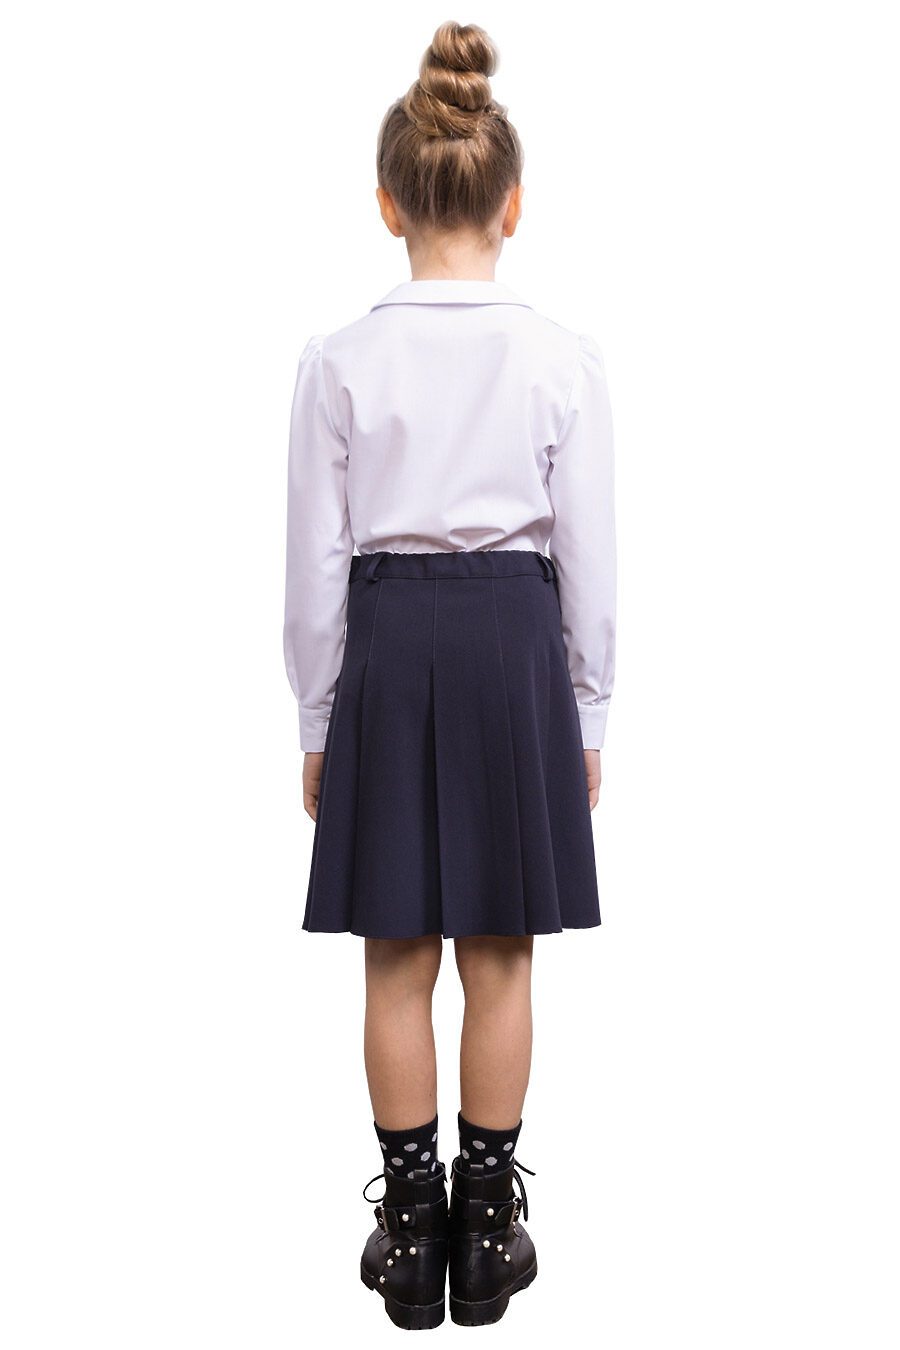 Блуза КАРАМЕЛЛИ (784918), купить в Moyo.moda